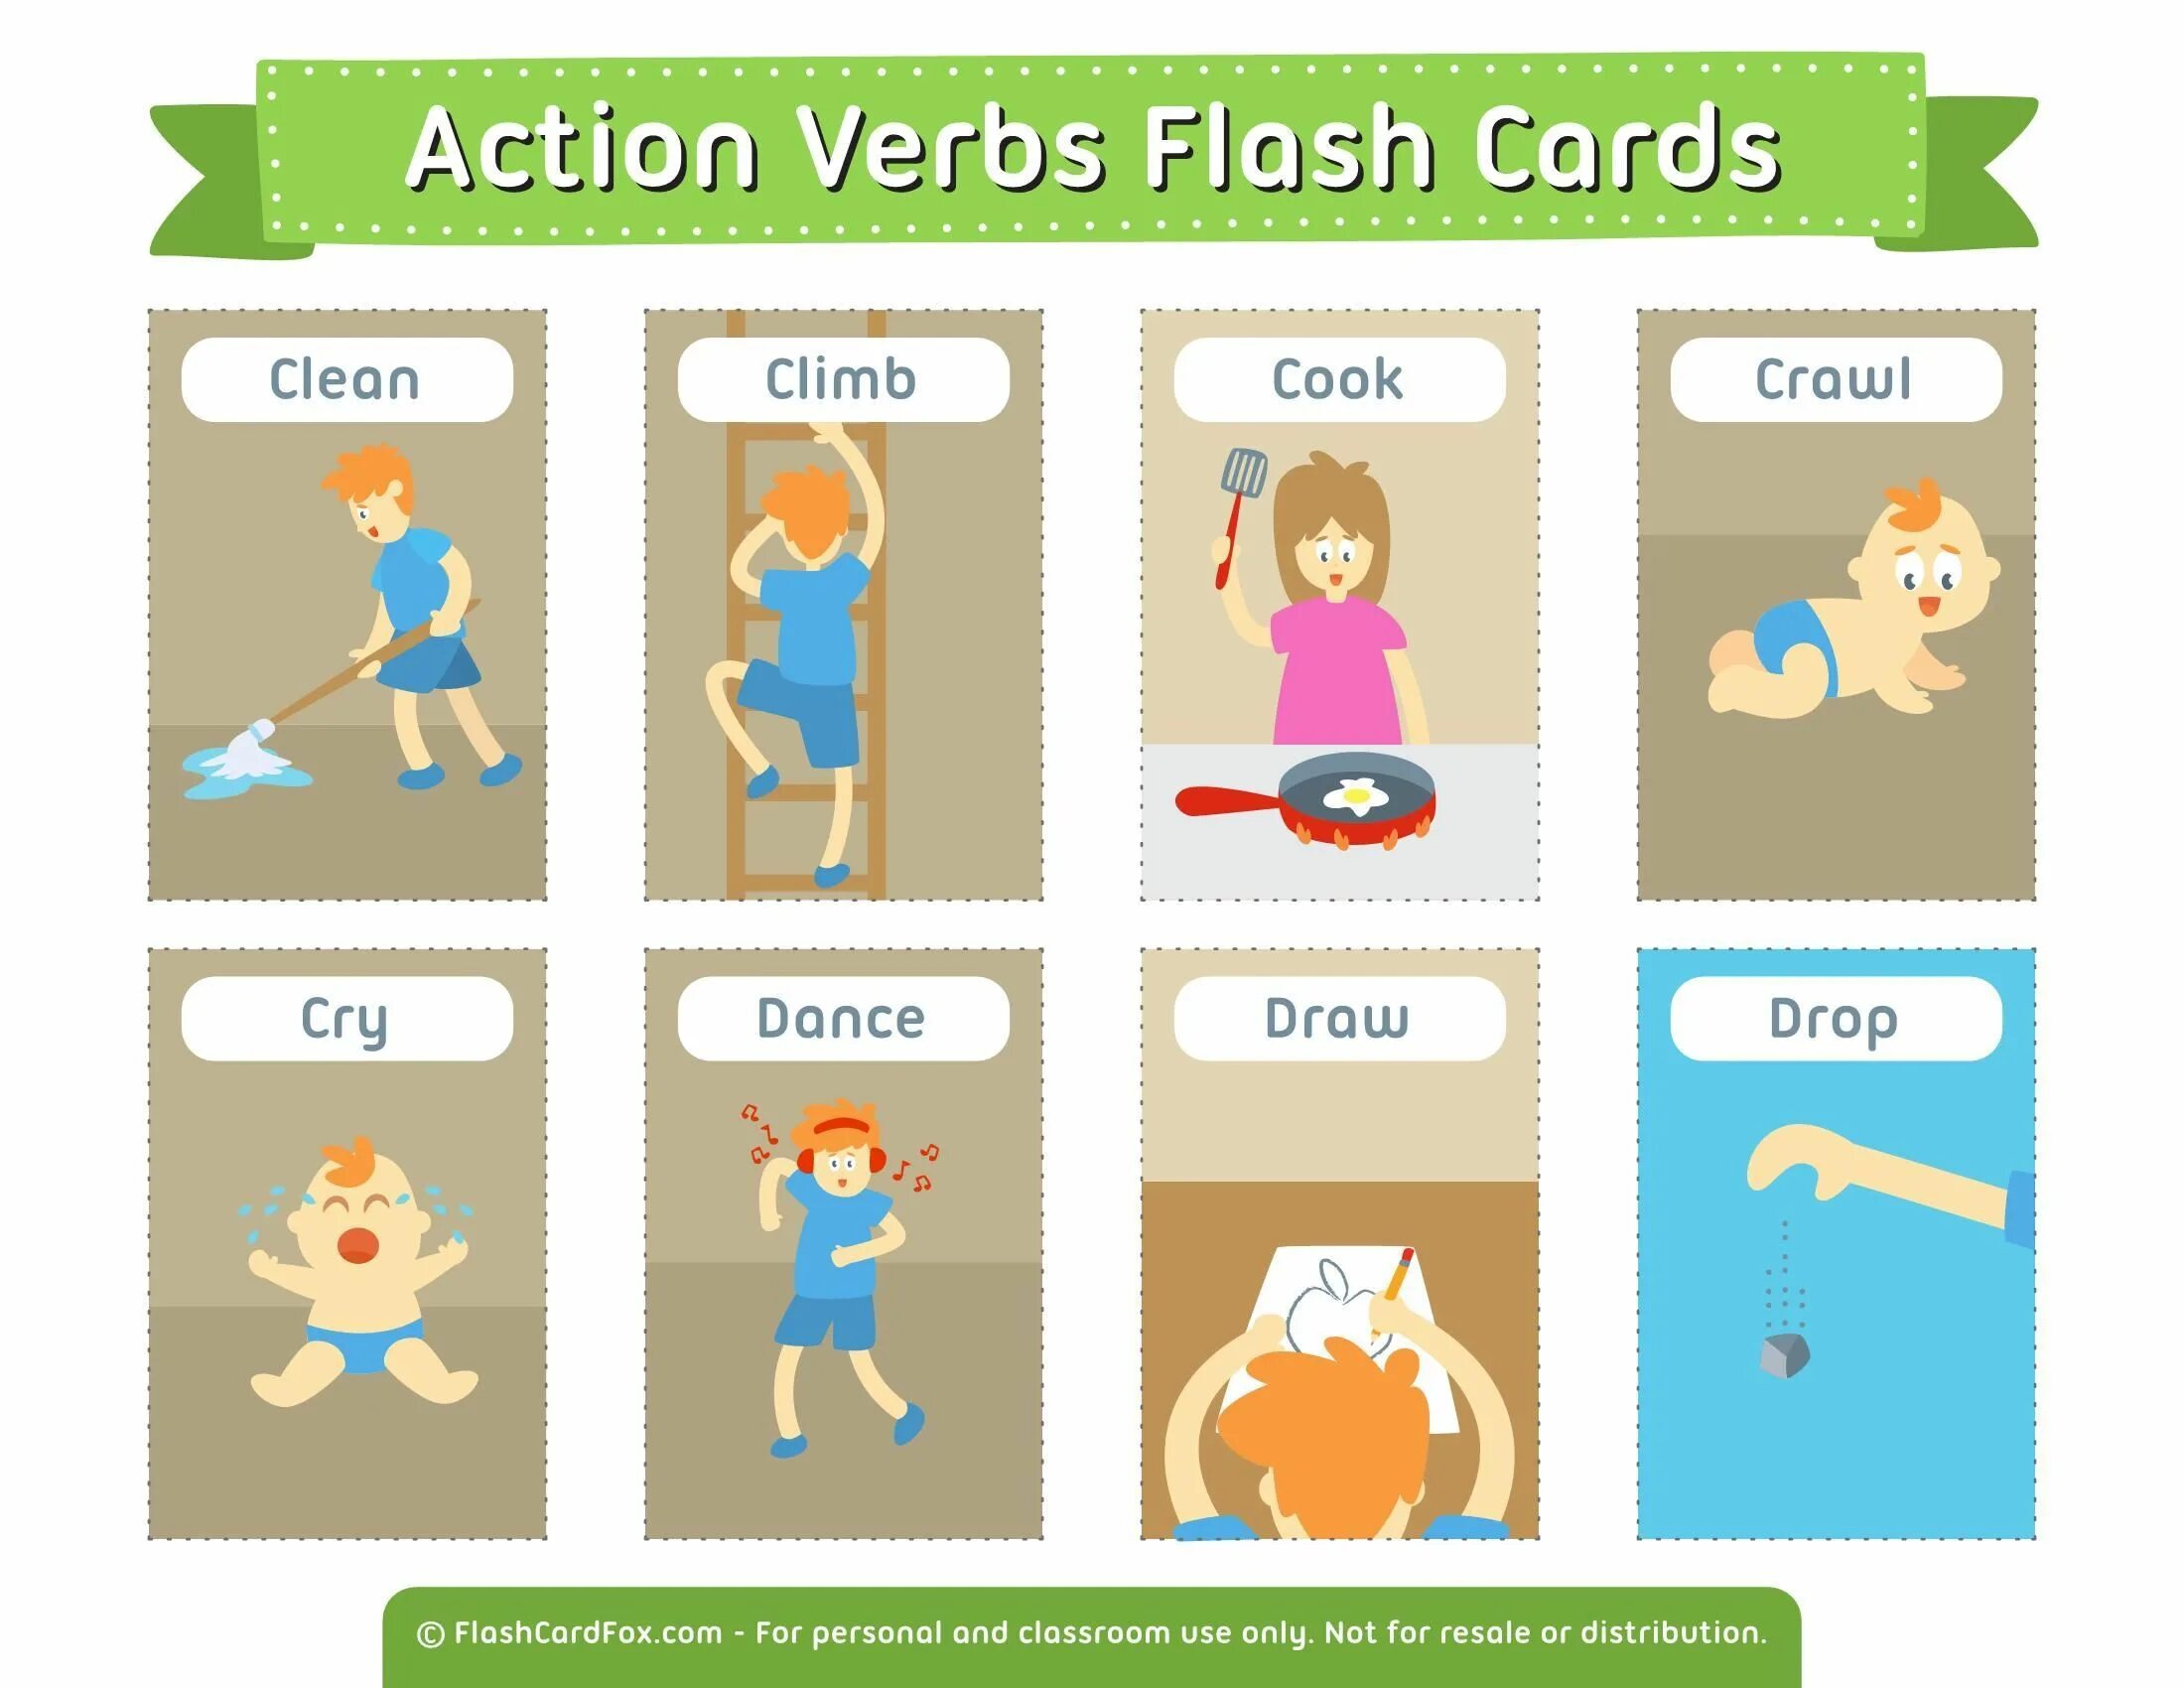 Actions rules. Карточки Actions. Глаголы на английском для детей. Карточки Actions для детей. Английские глаголы карточки.